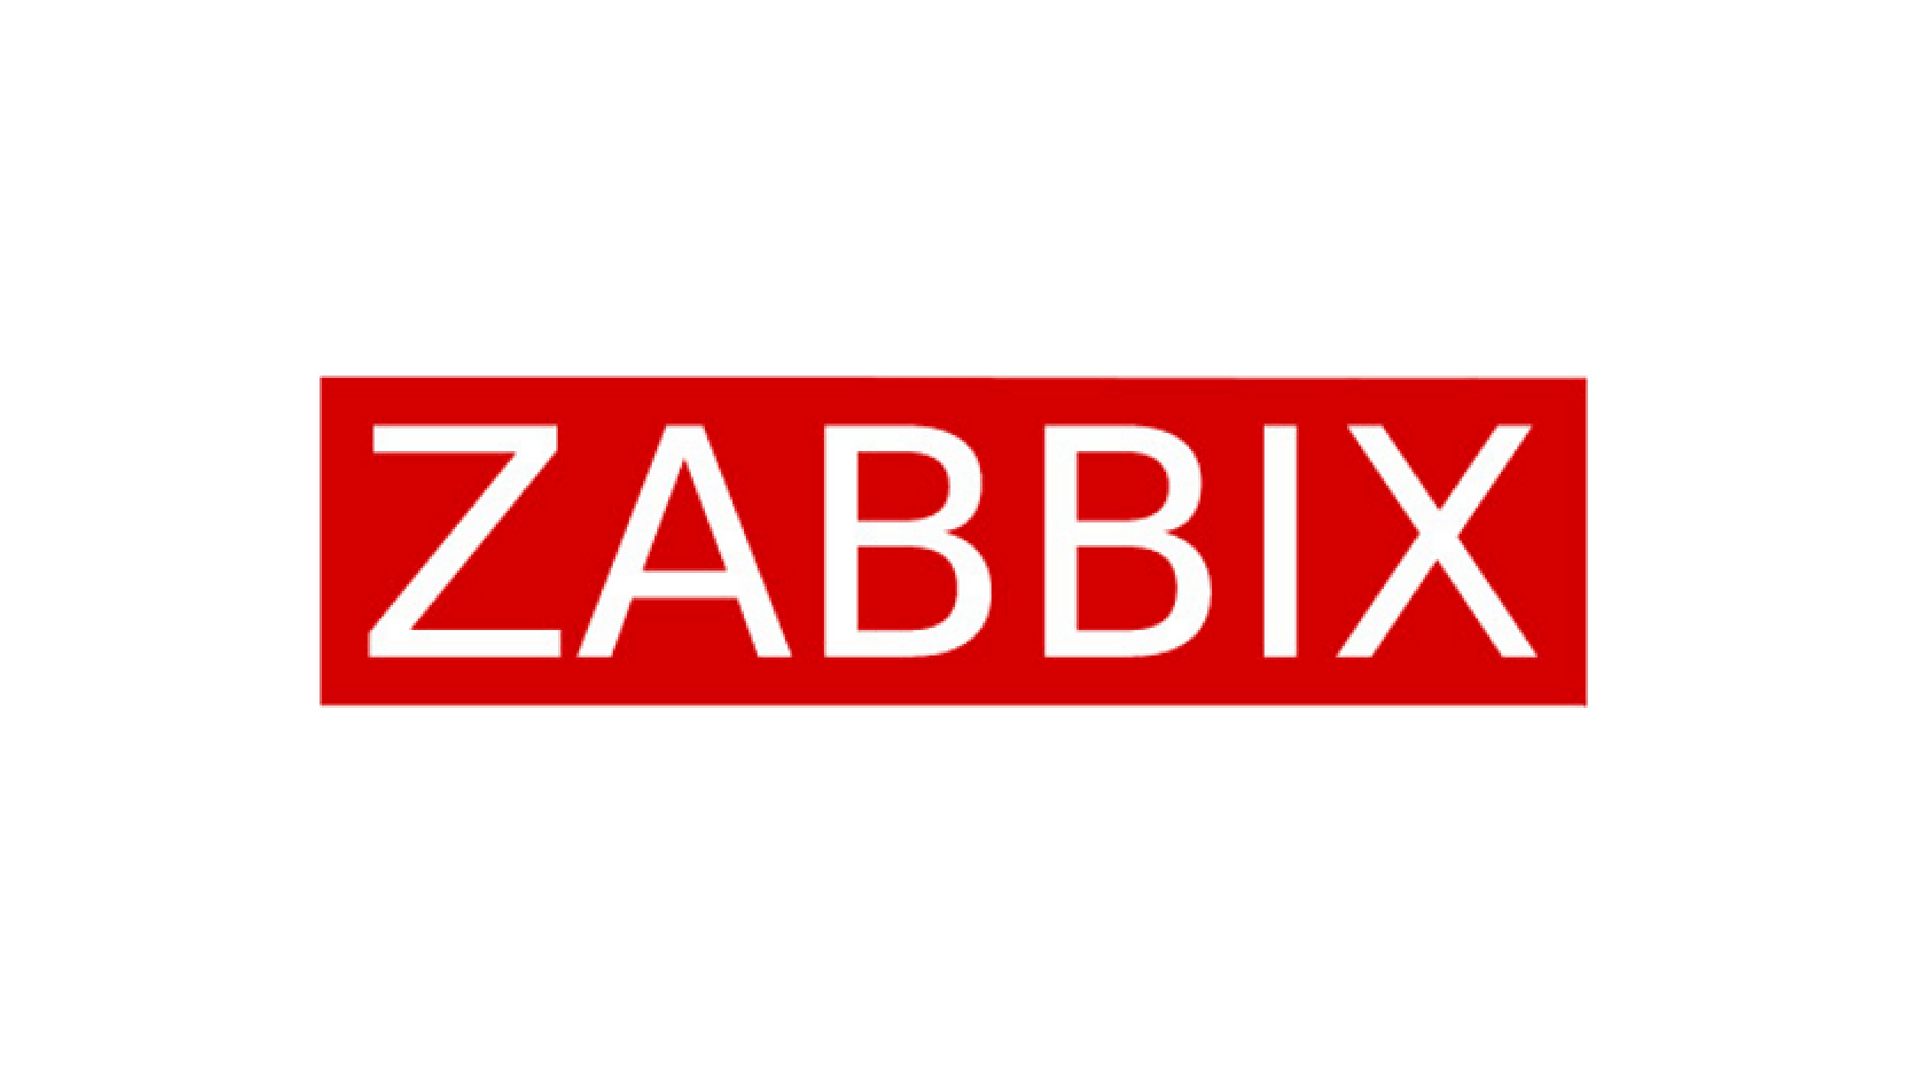 Zabbix tool